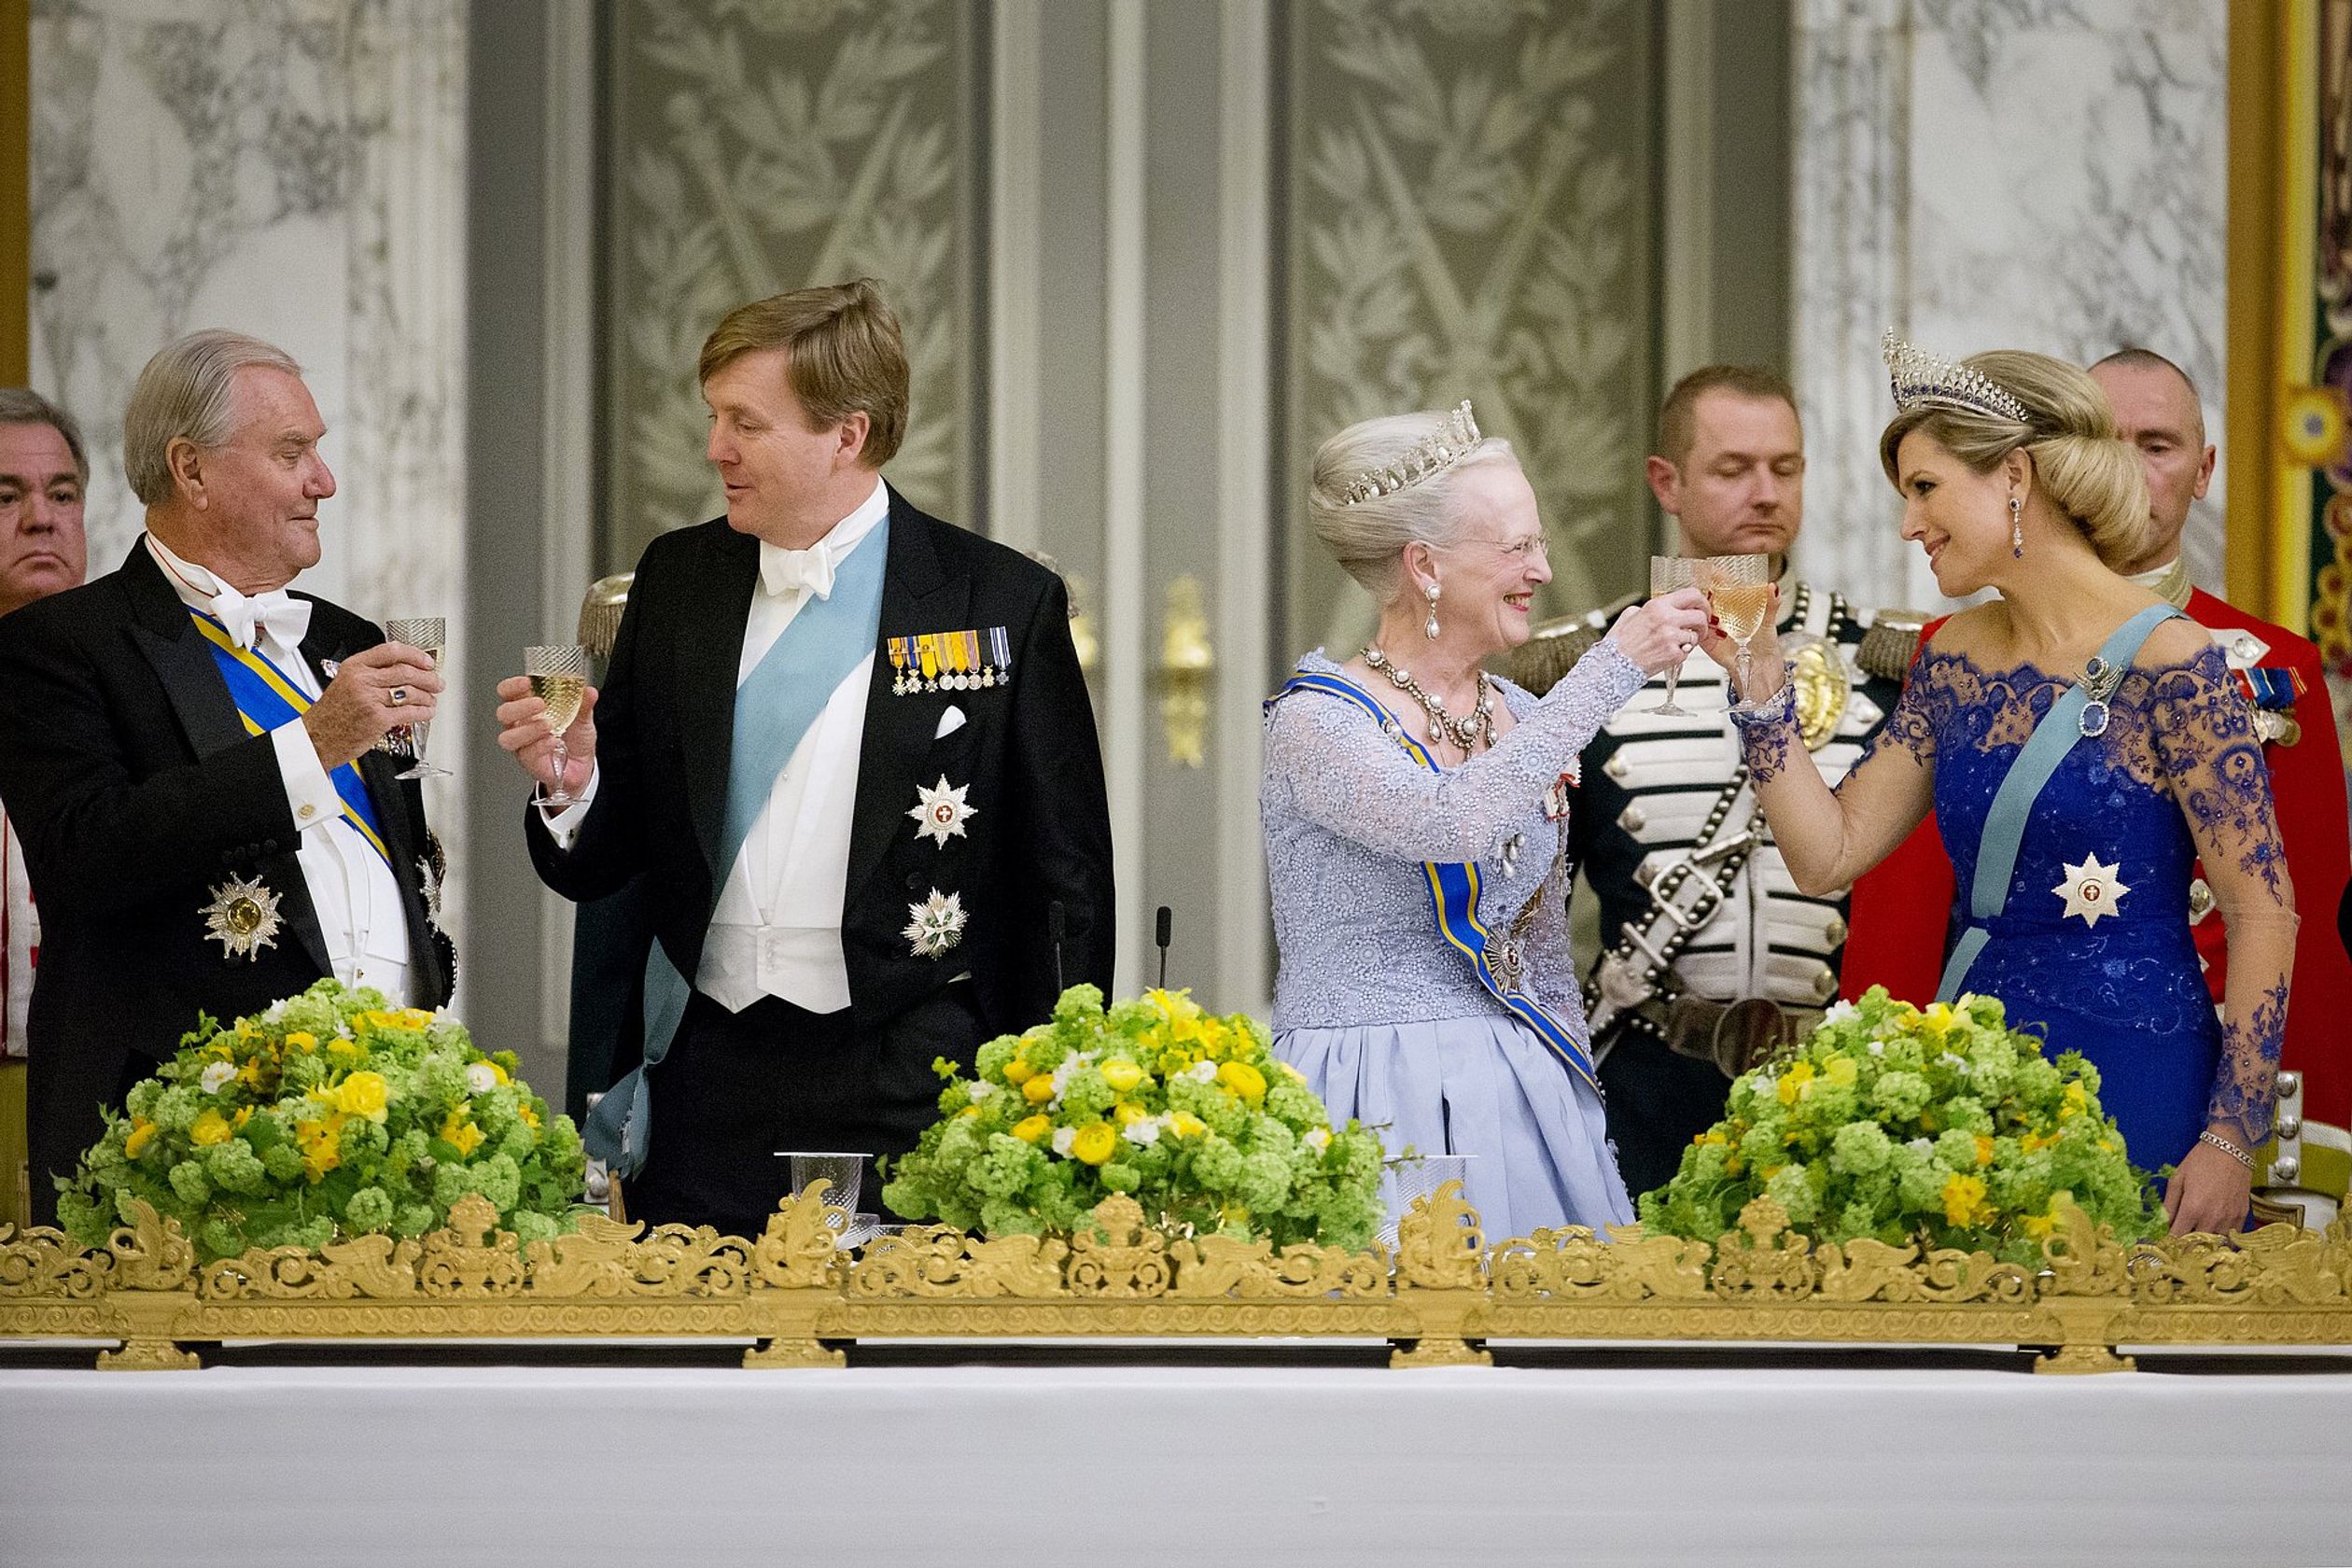 Een toost wordt uitgebracht tijdens het staatsbanket. V.l.n.r. zien we prins Henrik, koning Willem-Alexander, koningin Margrethe en koningin Máxima. Tijdens dit diner benadrukt Margrethe in een speech de hechte band tussen de koningshuizen.